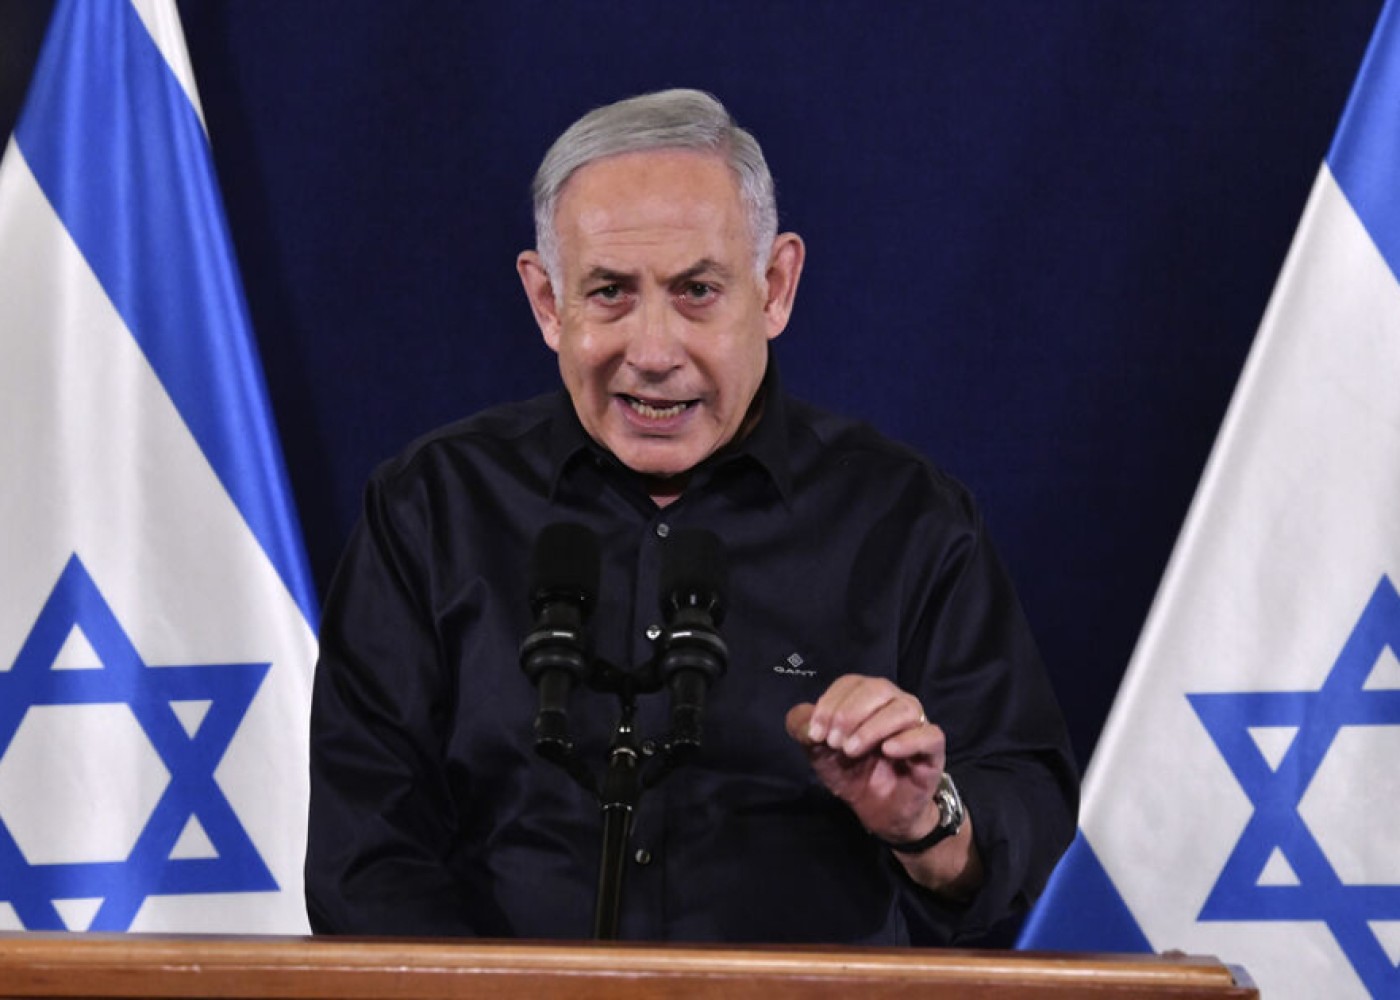 "ABŞ-dan silah tədarükü məsələsi həll edilməlidir"- Netanyahu